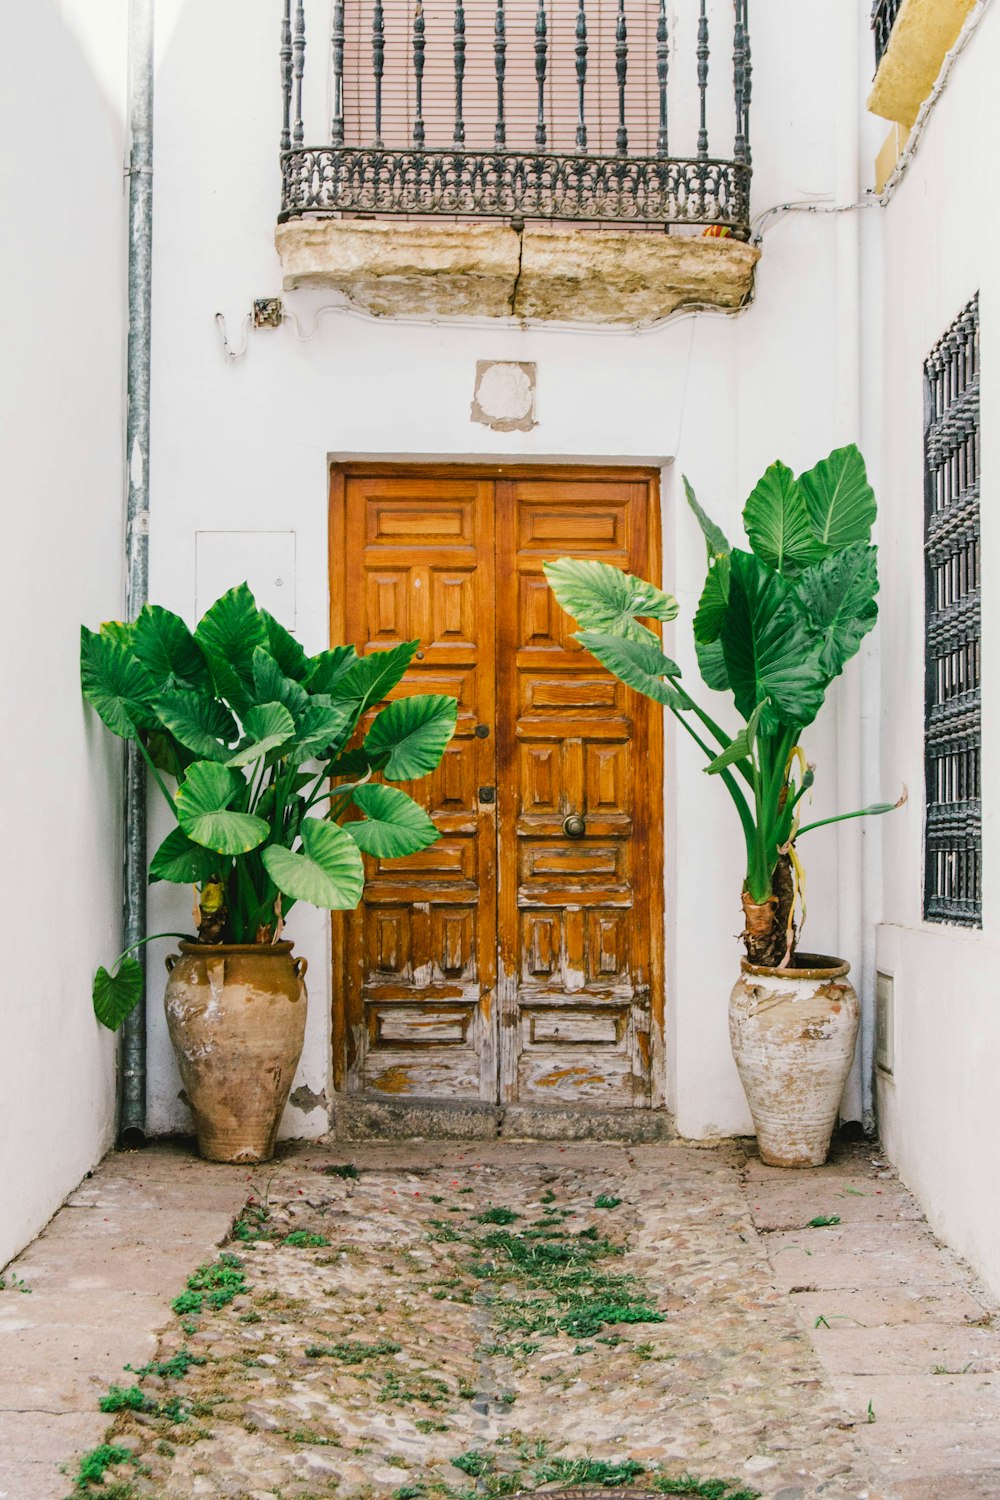 due piante verdi accanto alla porta